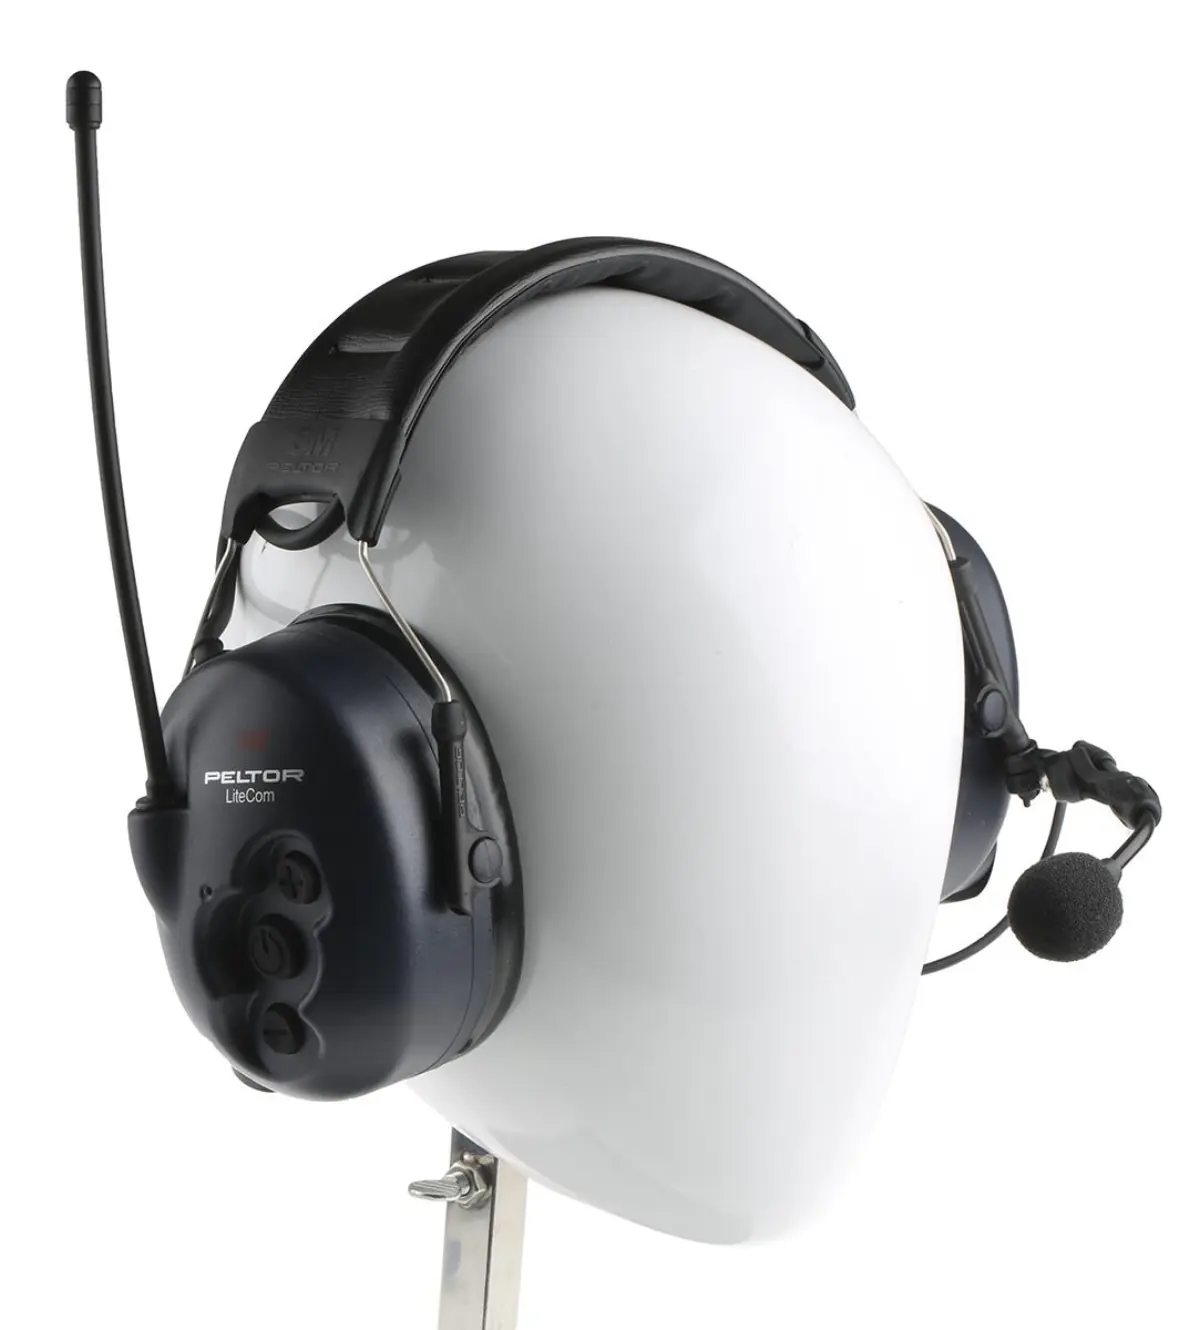 Pack de 4 Peltor LiteCom - radio avec casque antibruit - MT53H7A4400-EU